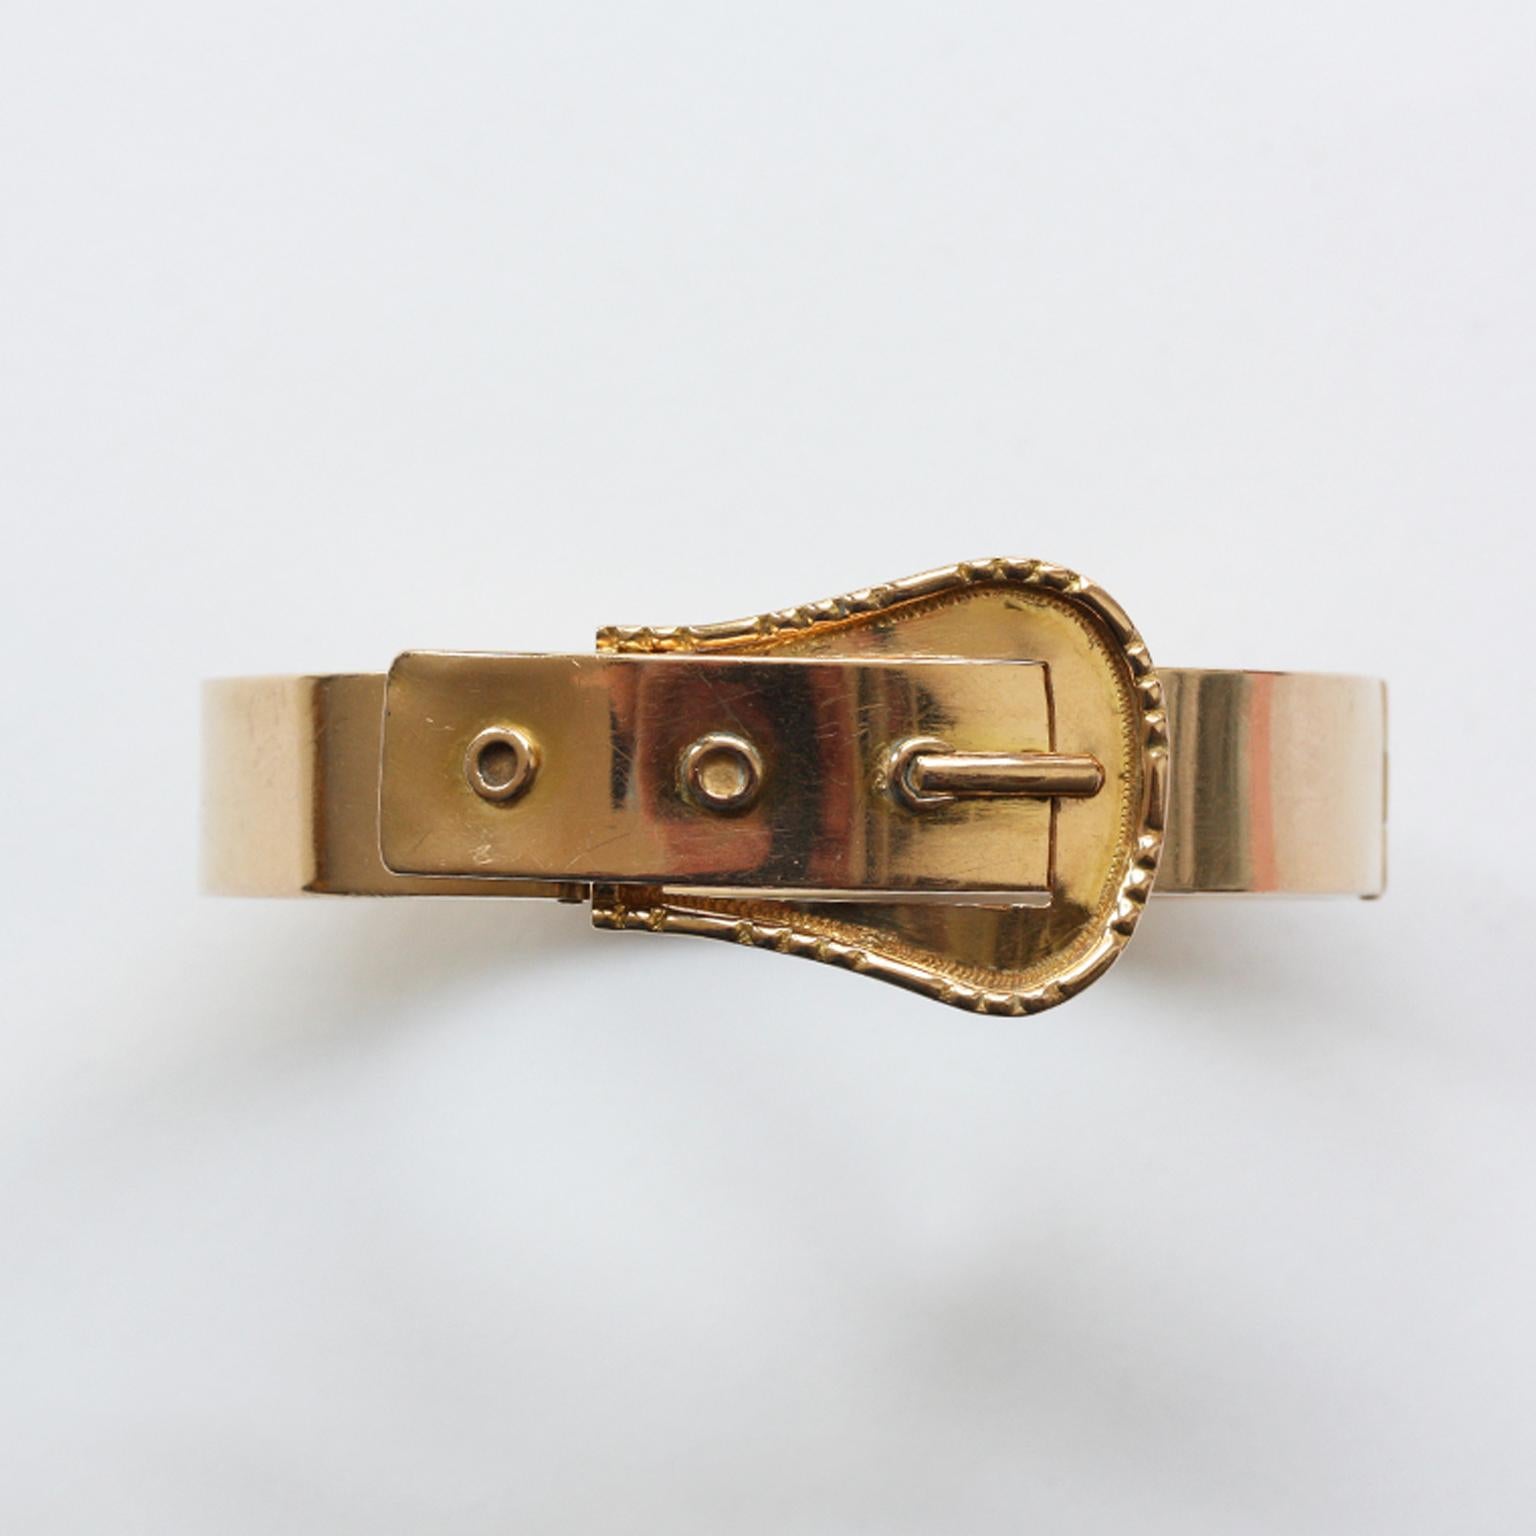 Un bracelet à boucle en or 18 carats, France, 19ème siècle.

poids : 23,85 grammes
taille intérieure : 6 x 5 cm
circonférence : 18 - 18,5 cm. Convient à un poignet de 17 - 18 cm